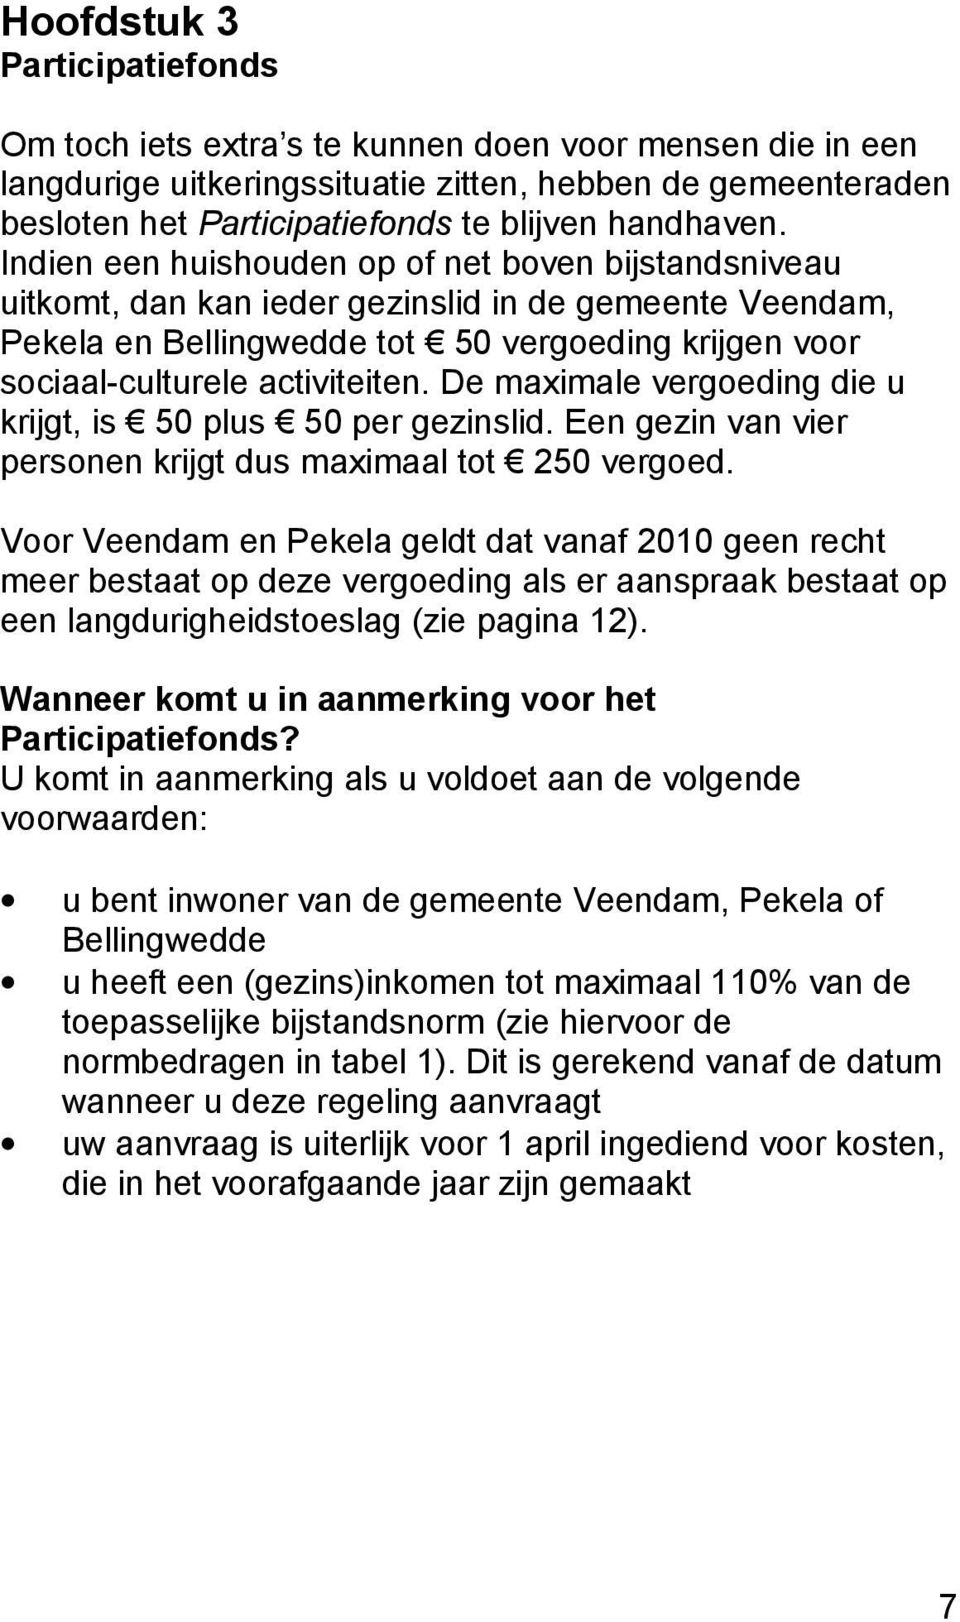 Indien een huishouden op of net boven bijstandsniveau uitkomt, dan kan ieder gezinslid in de gemeente Veendam, Pekela en Bellingwedde tot 50 vergoeding krijgen voor sociaal-culturele activiteiten.